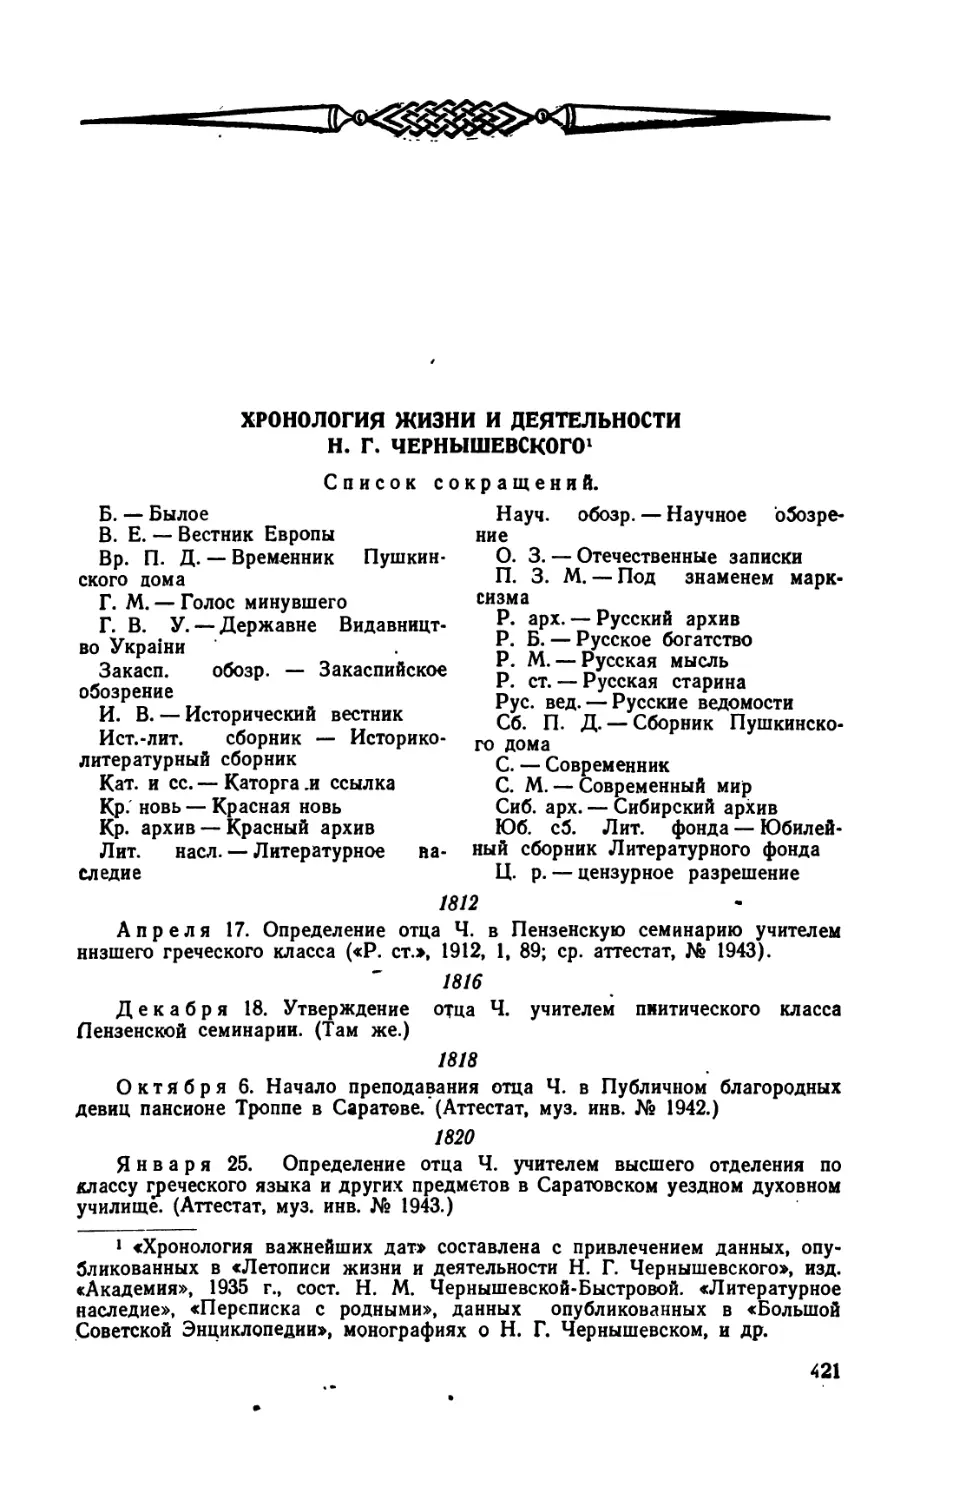 Хронология  жизни  и  деятельности  Н.Г. Чернышевского